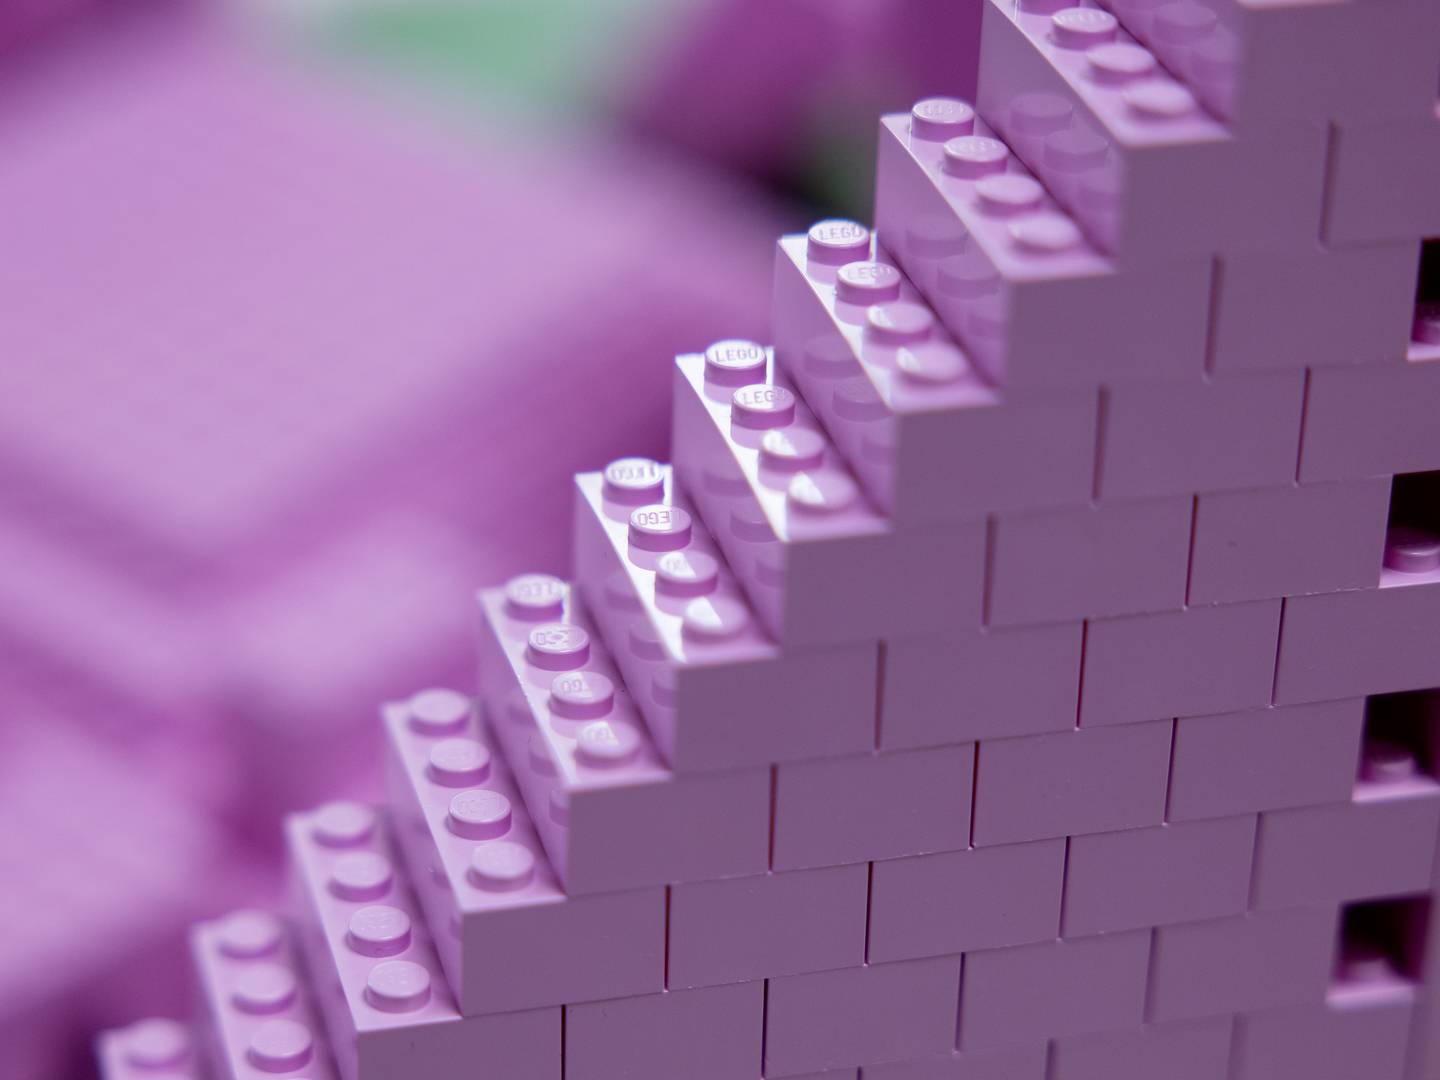 konvertering grænse Ged Lego sætter ny salgsrekord trods usikkert marked — DetailWatch